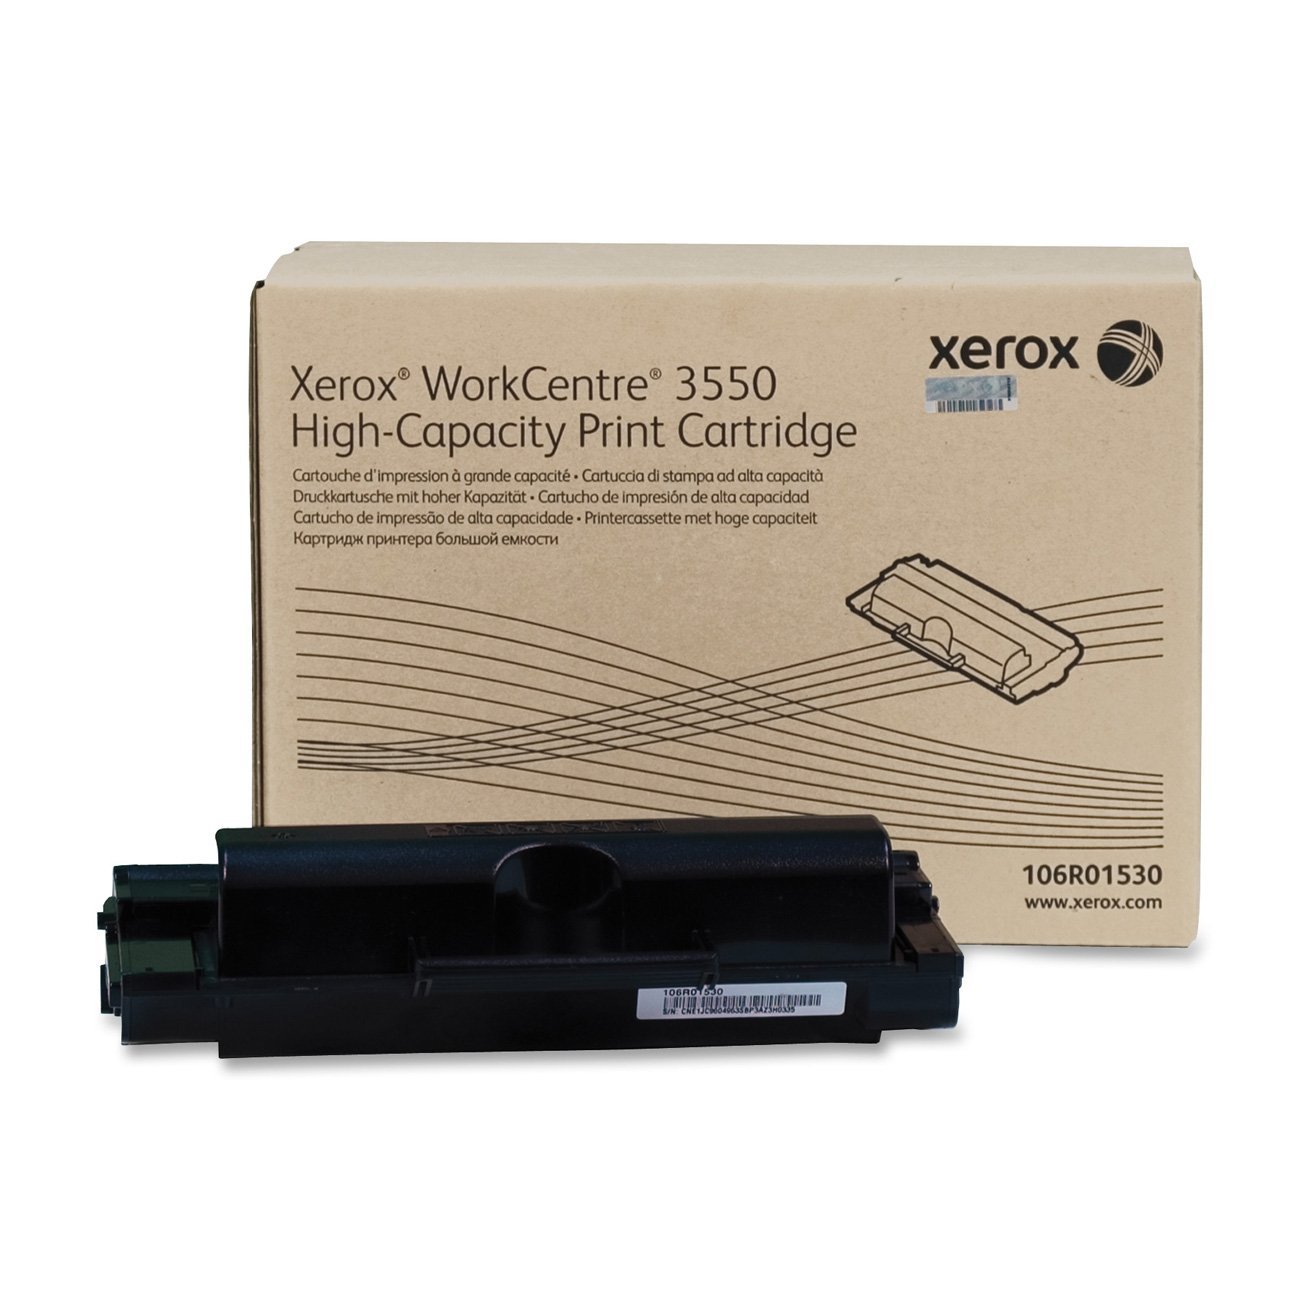 Toner Xerox Alta Capacidad para uso con Xerox WorkCentre 3550-Part# 106R01530